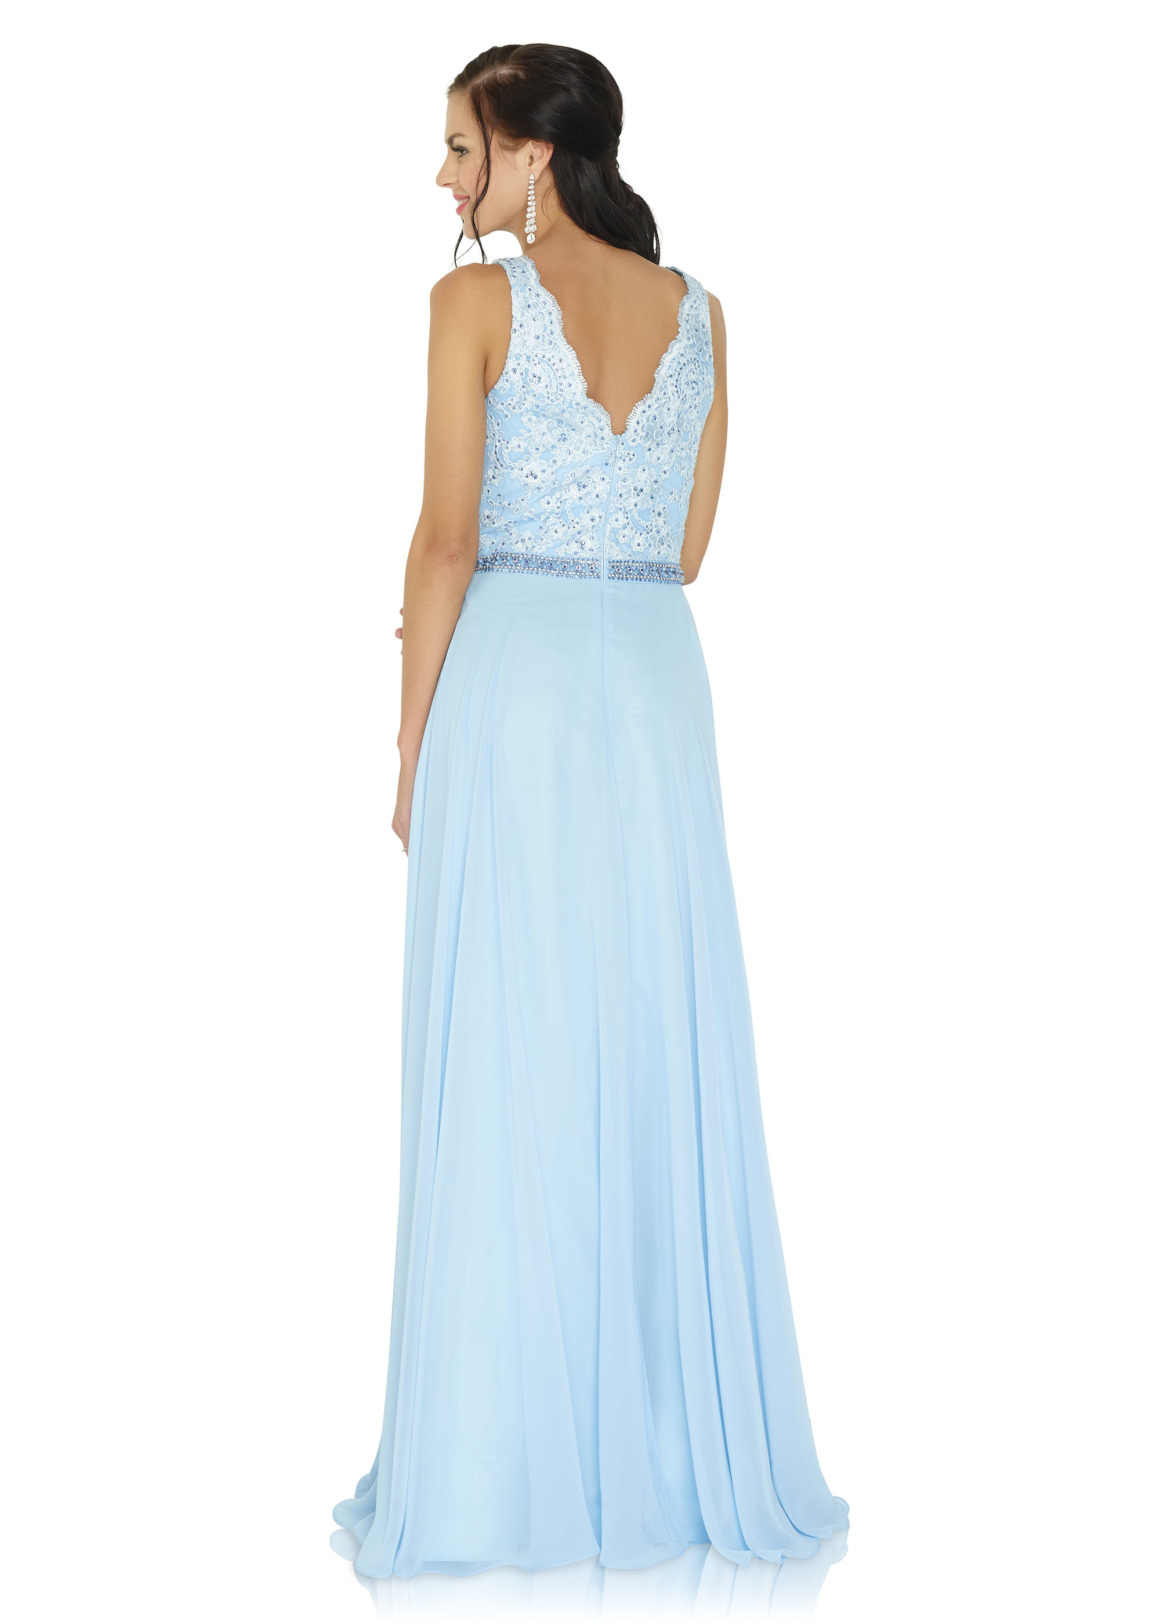 Brautjungfern Kleid Hochzeit Mode klassisch Trauzeugin Brides Maid sky blue hellblau soft pastell Rücken Ansicht